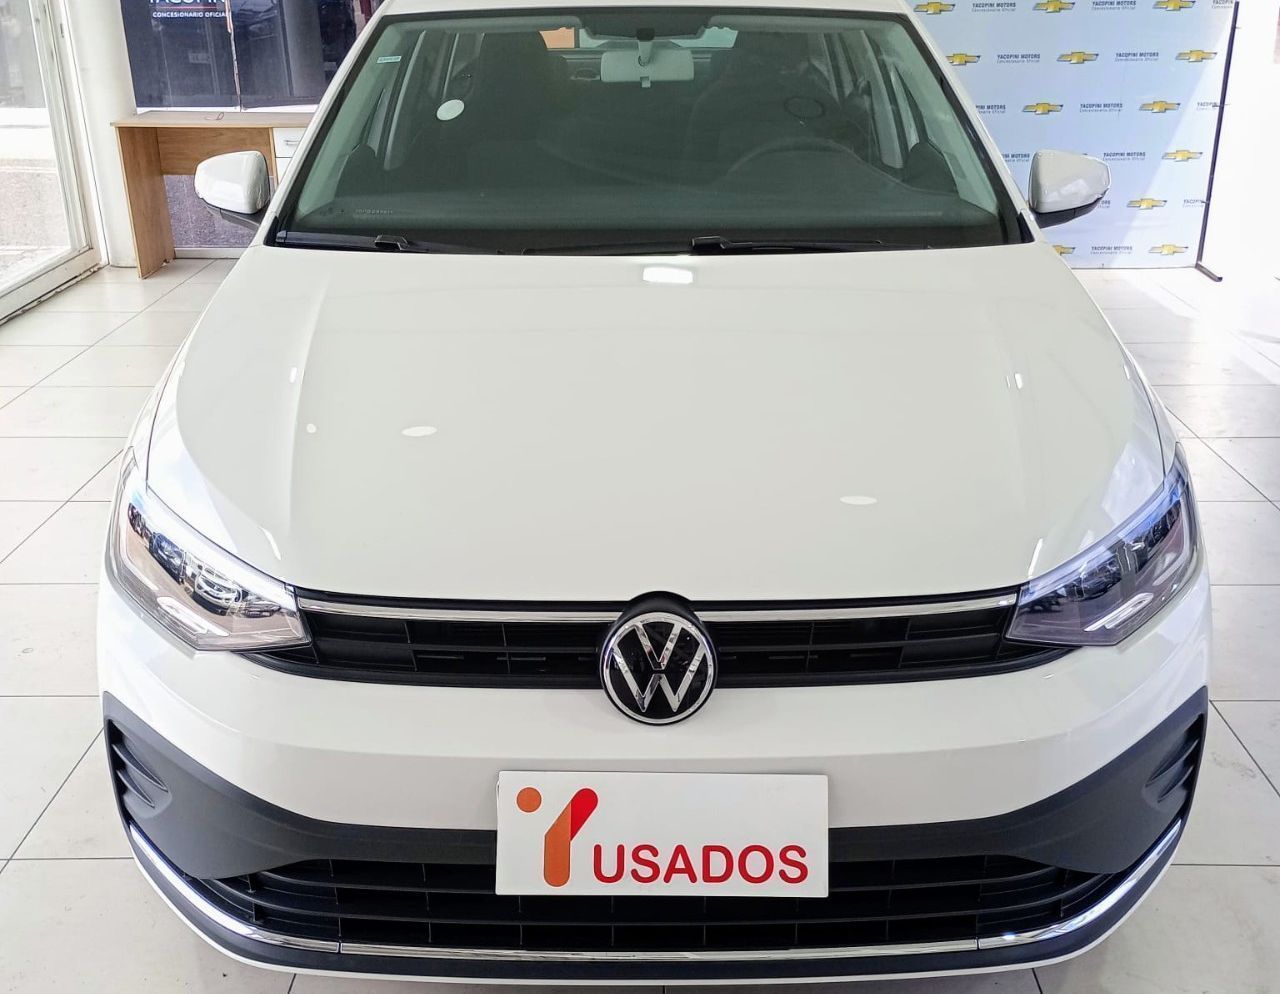 Volkswagen Virtus Nuevo en Mendoza, deRuedas